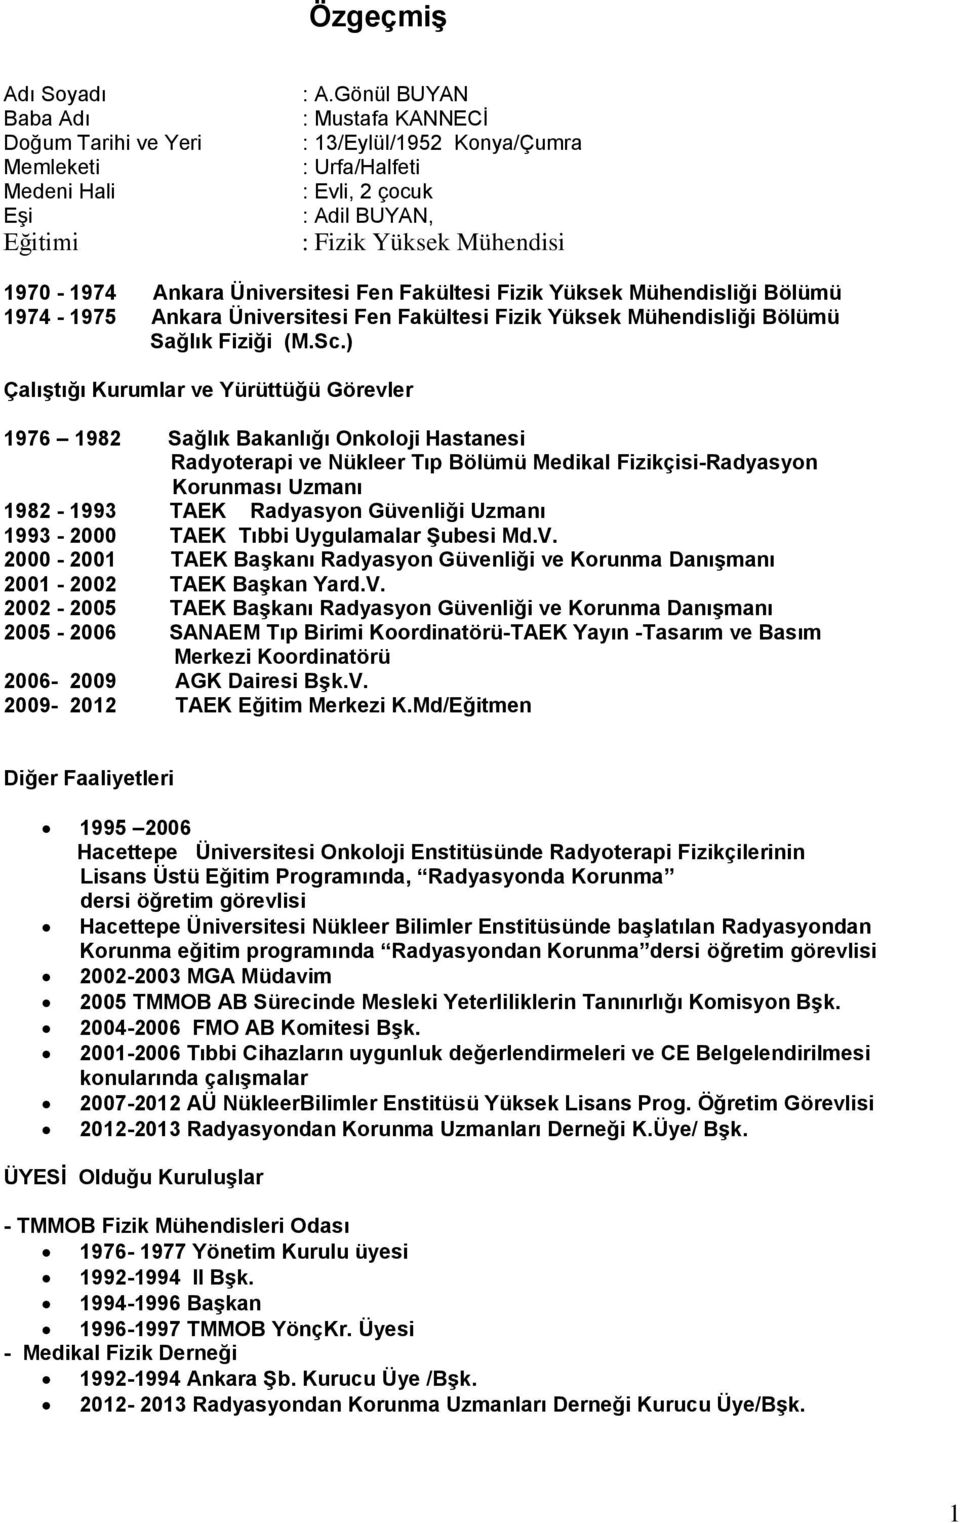 Bölümü 1974-1975 Ankara Üniversitesi Fen Fakültesi Fizik Yüksek Mühendisliği Bölümü Sağlık Fiziği (M.Sc.